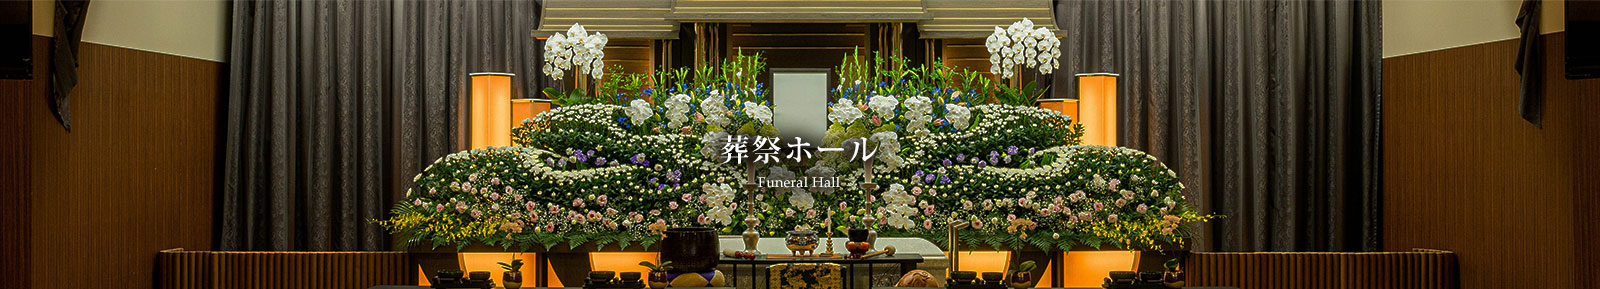 葬祭ホール